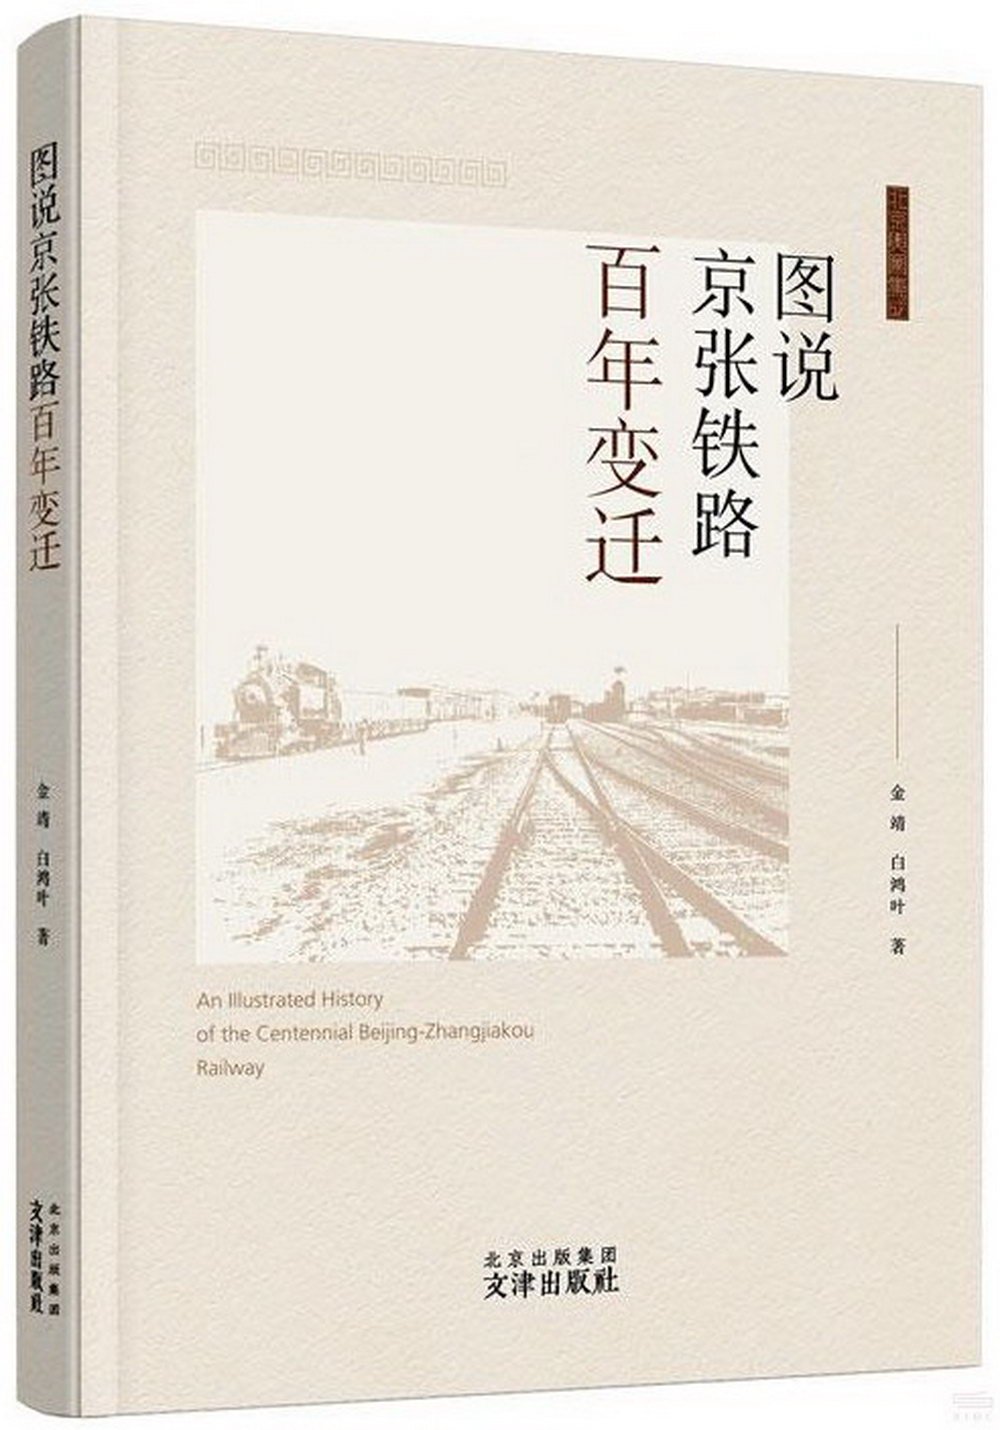 圖說京張鐵路百年變遷